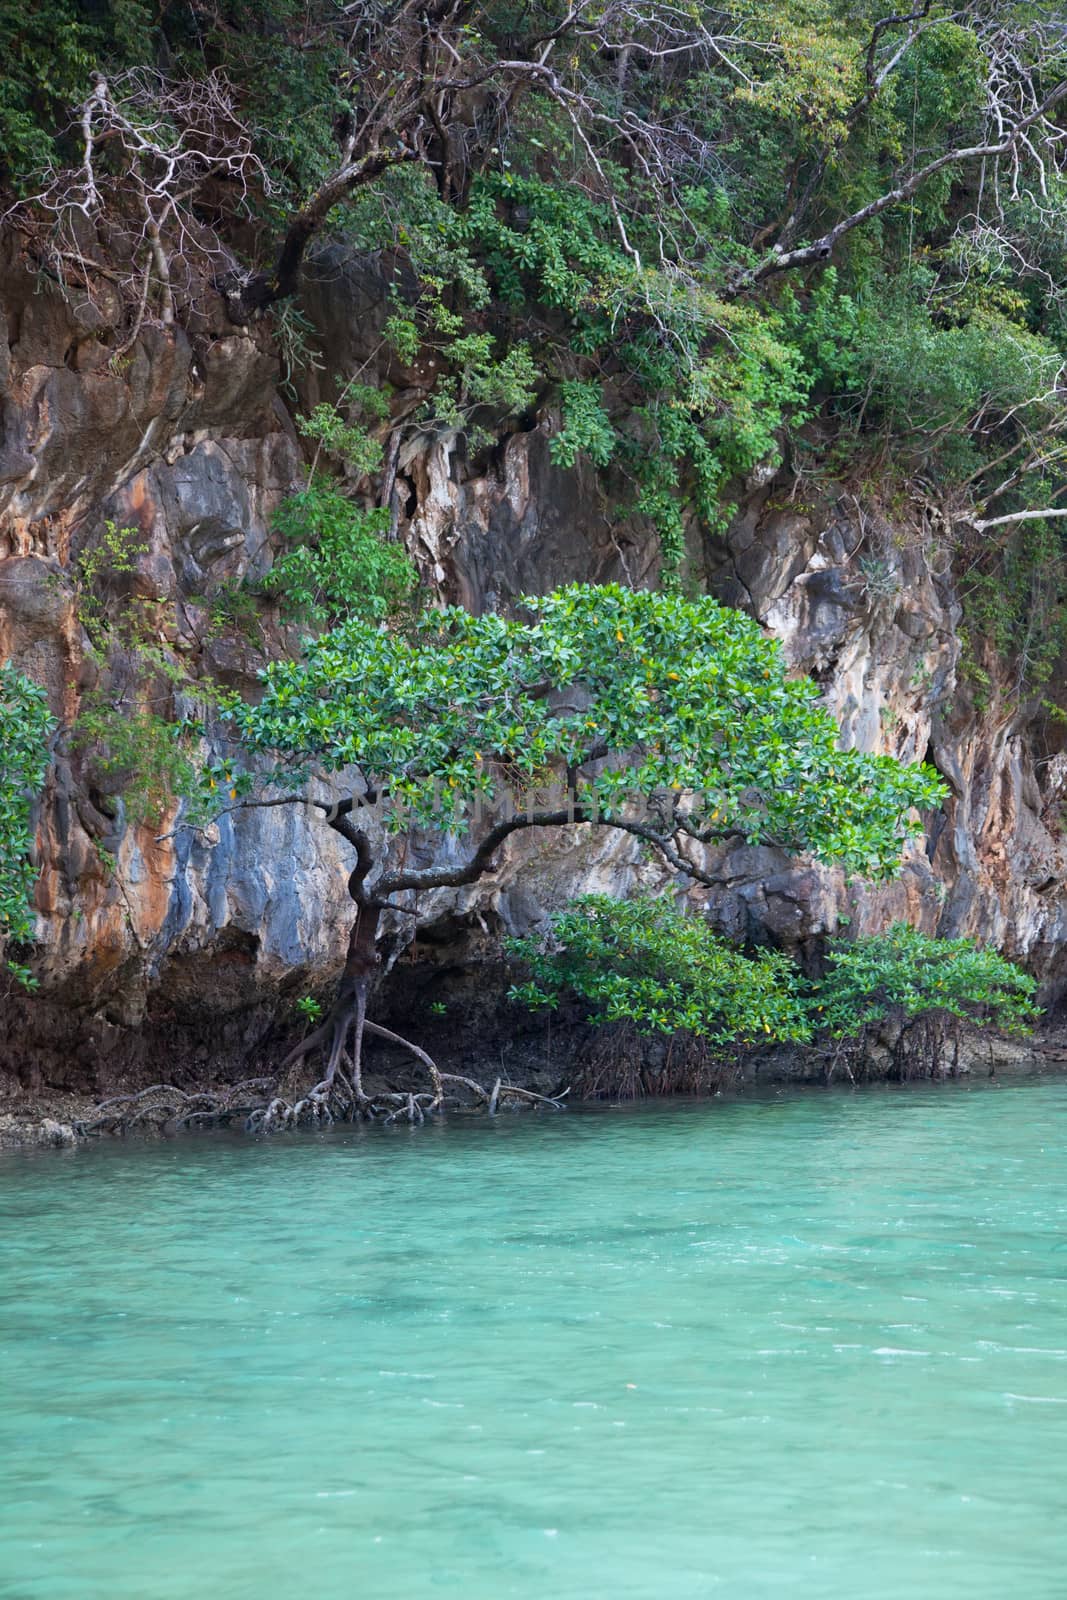 Mangrove trees in a lagoon on the island Hong. Thailand